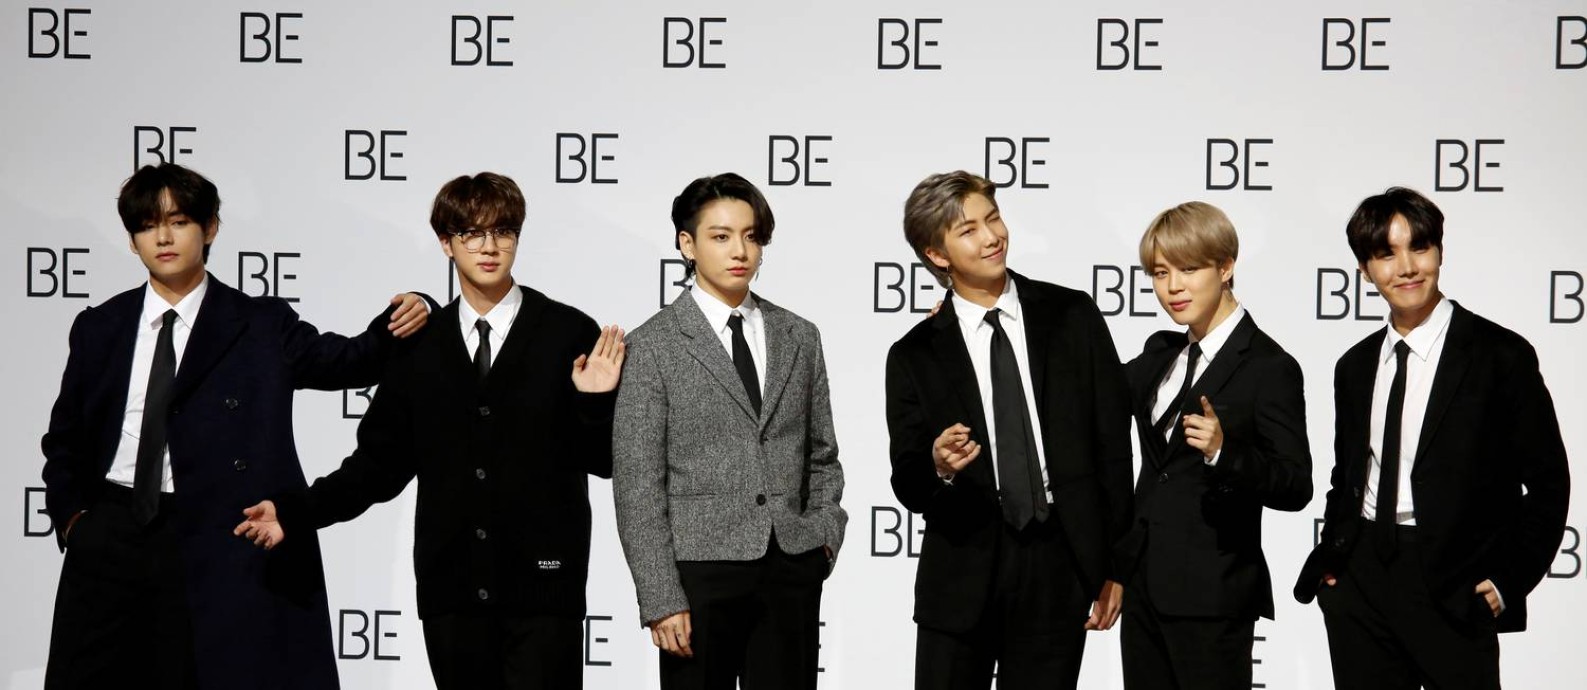 Agenciadora da banda de k-pop BTS cria joint venture para empreendimento de NFT Foto: Heo Han / Reuters